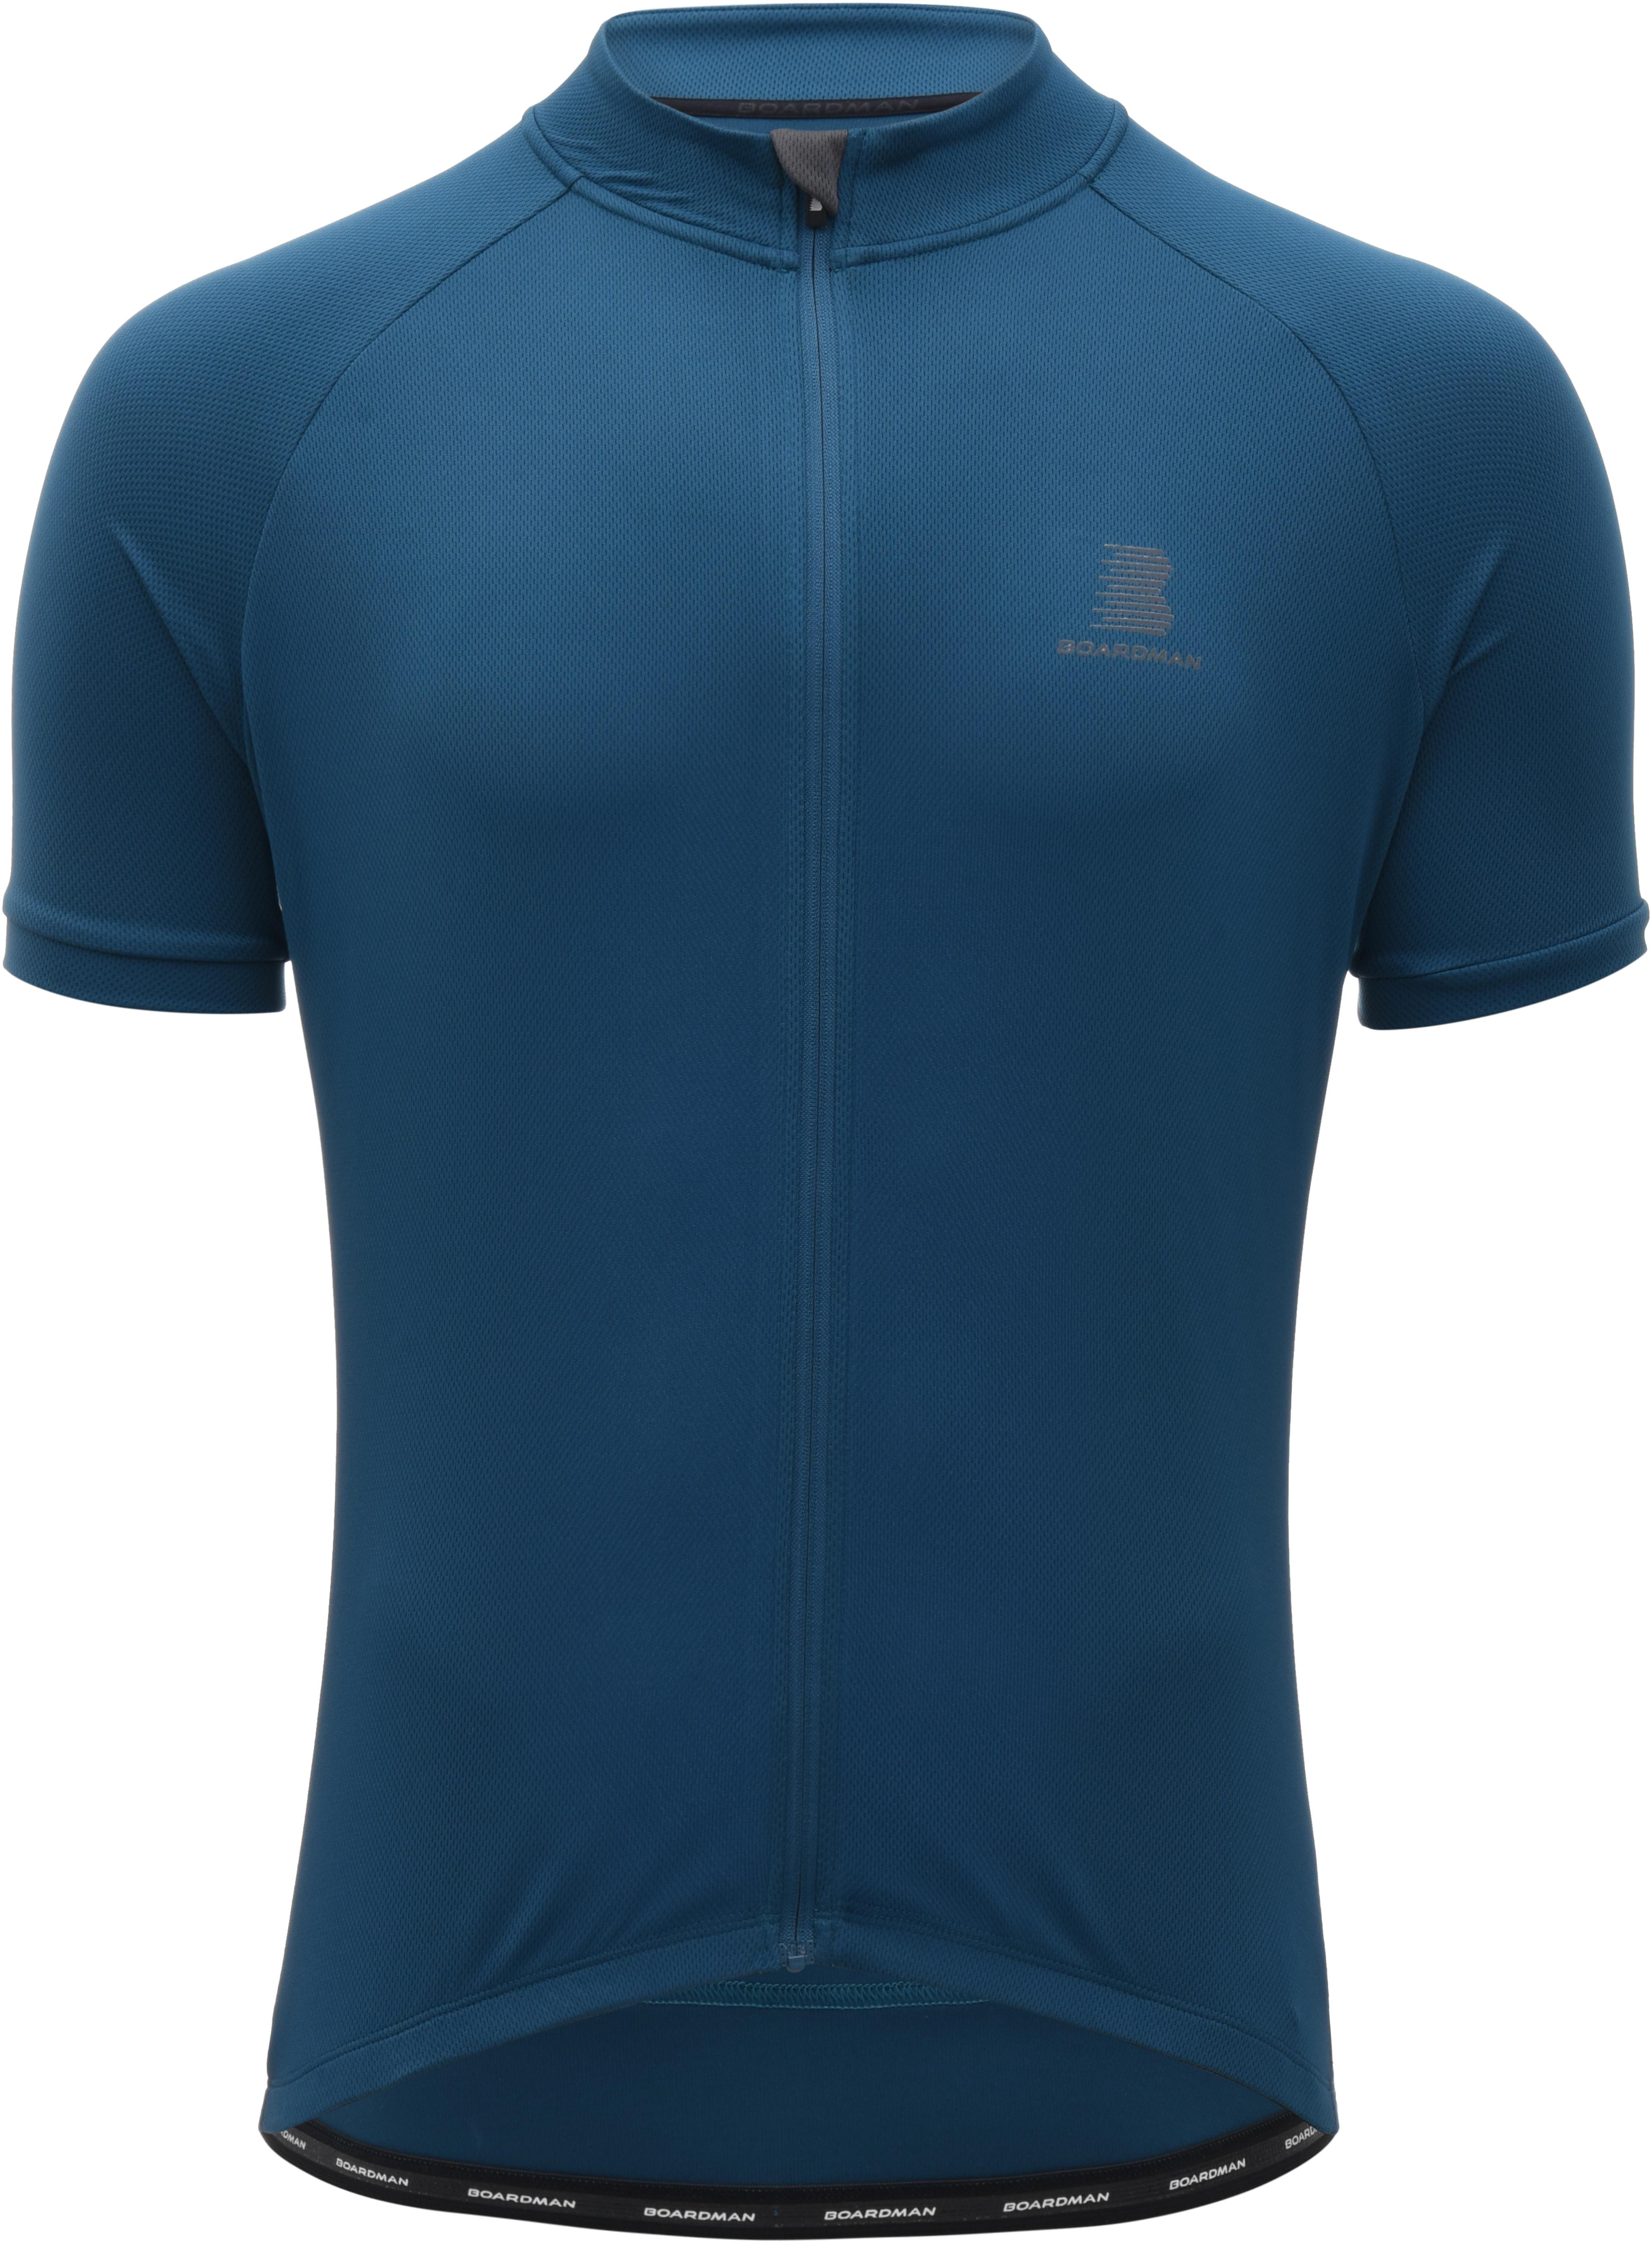 Boardman Mens Cycling Jersey - Blue 